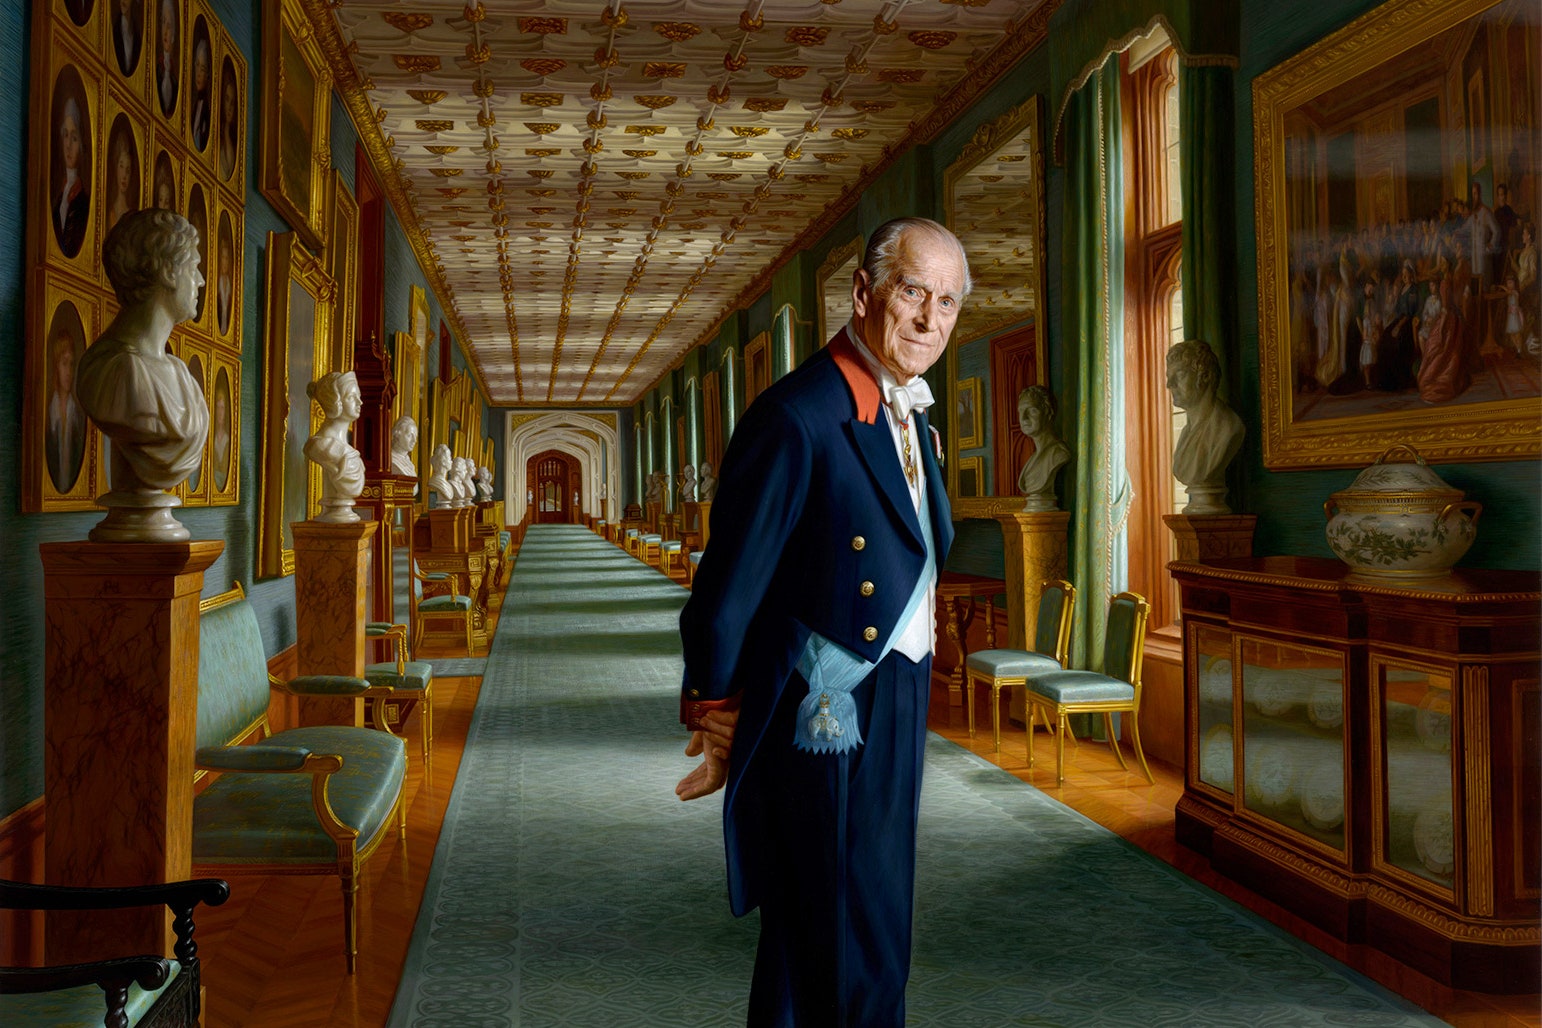 Останній офіційний портрет принца Пилипа, герцога Едінбурзького. Принц стоїть у великому коридорі Віндзорського замку. Художник Ральф Хейманс, 2018 рік